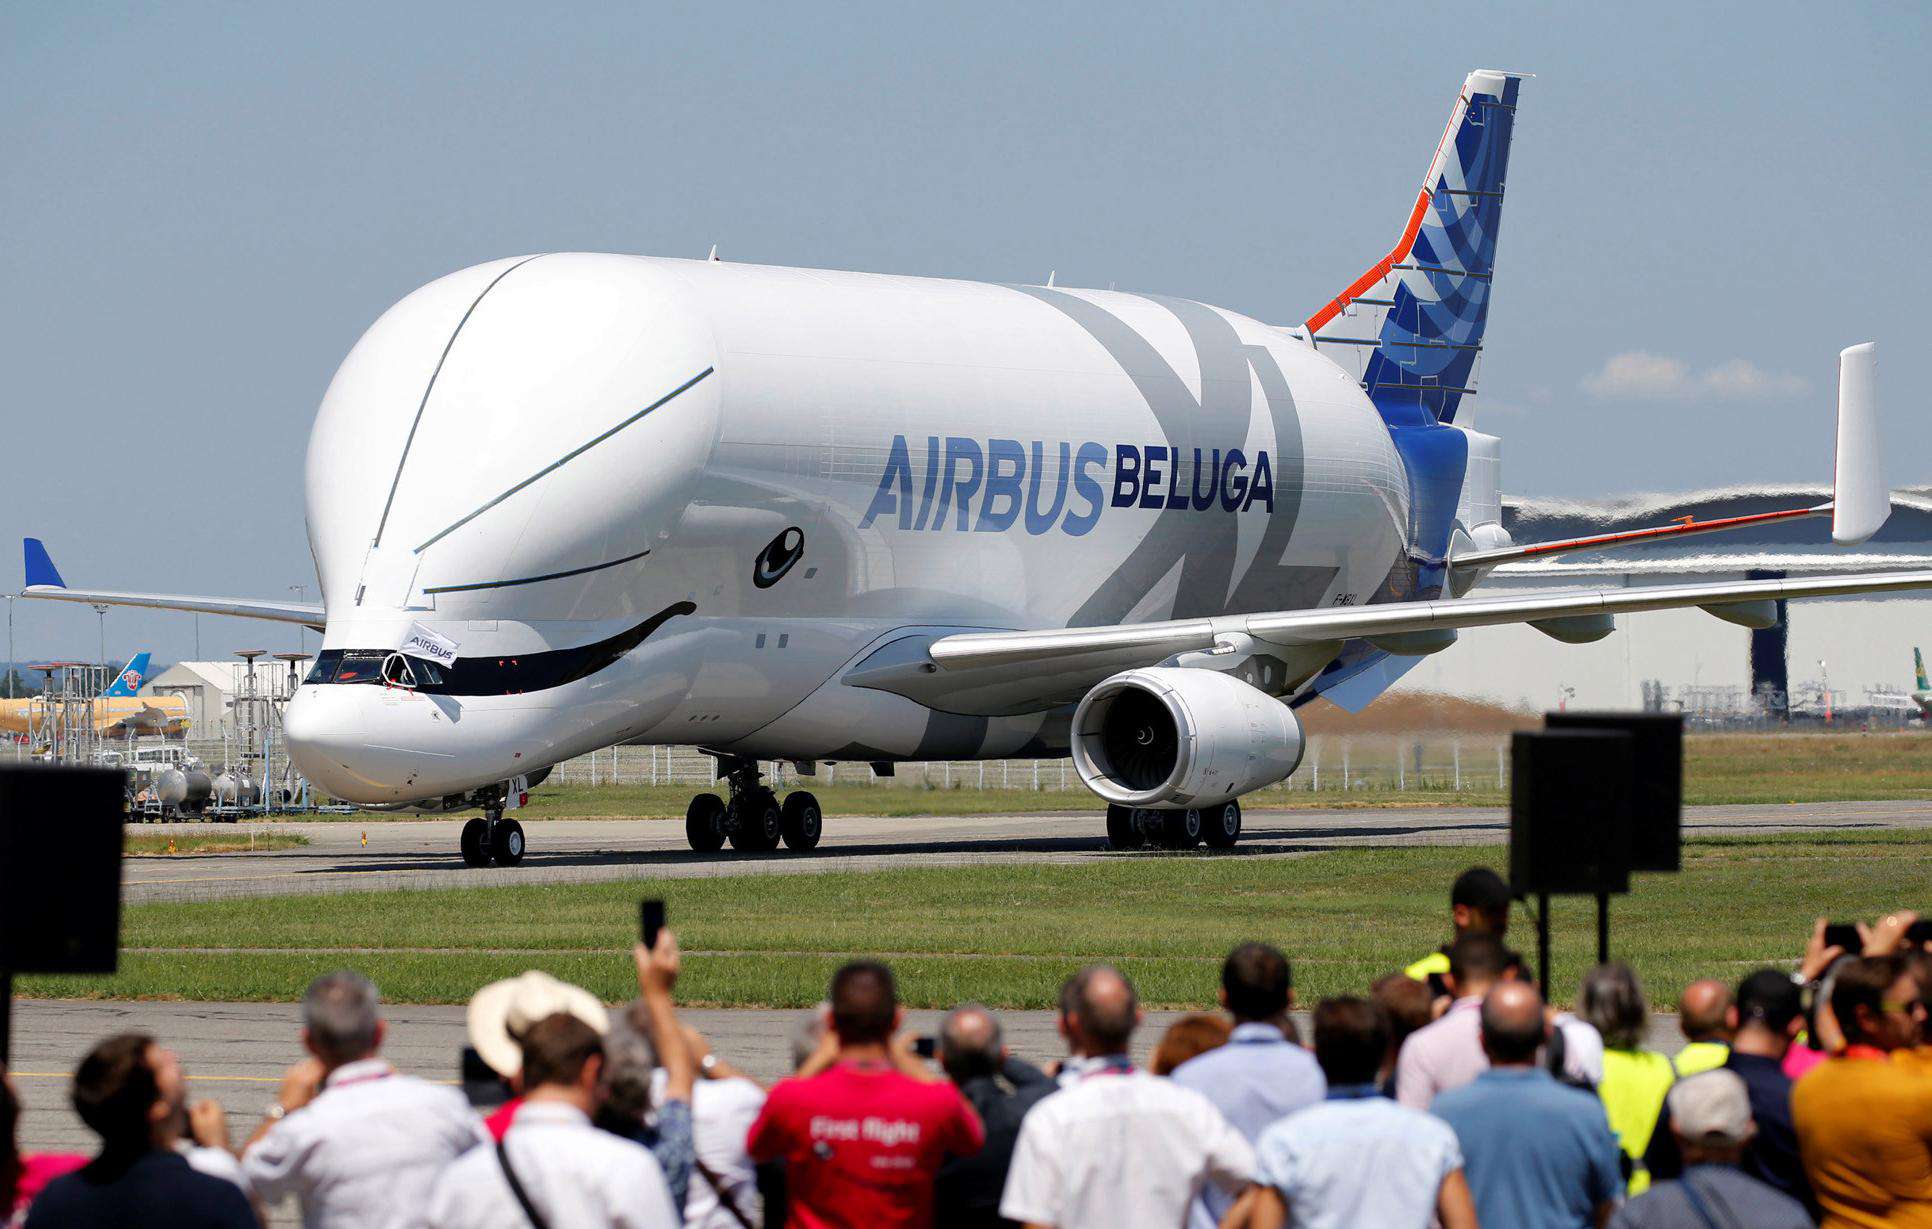 Taboola Ad Example 31524 - 'Baleia Voadora': Avião Beluga XL Da Airbus Começa A Operar